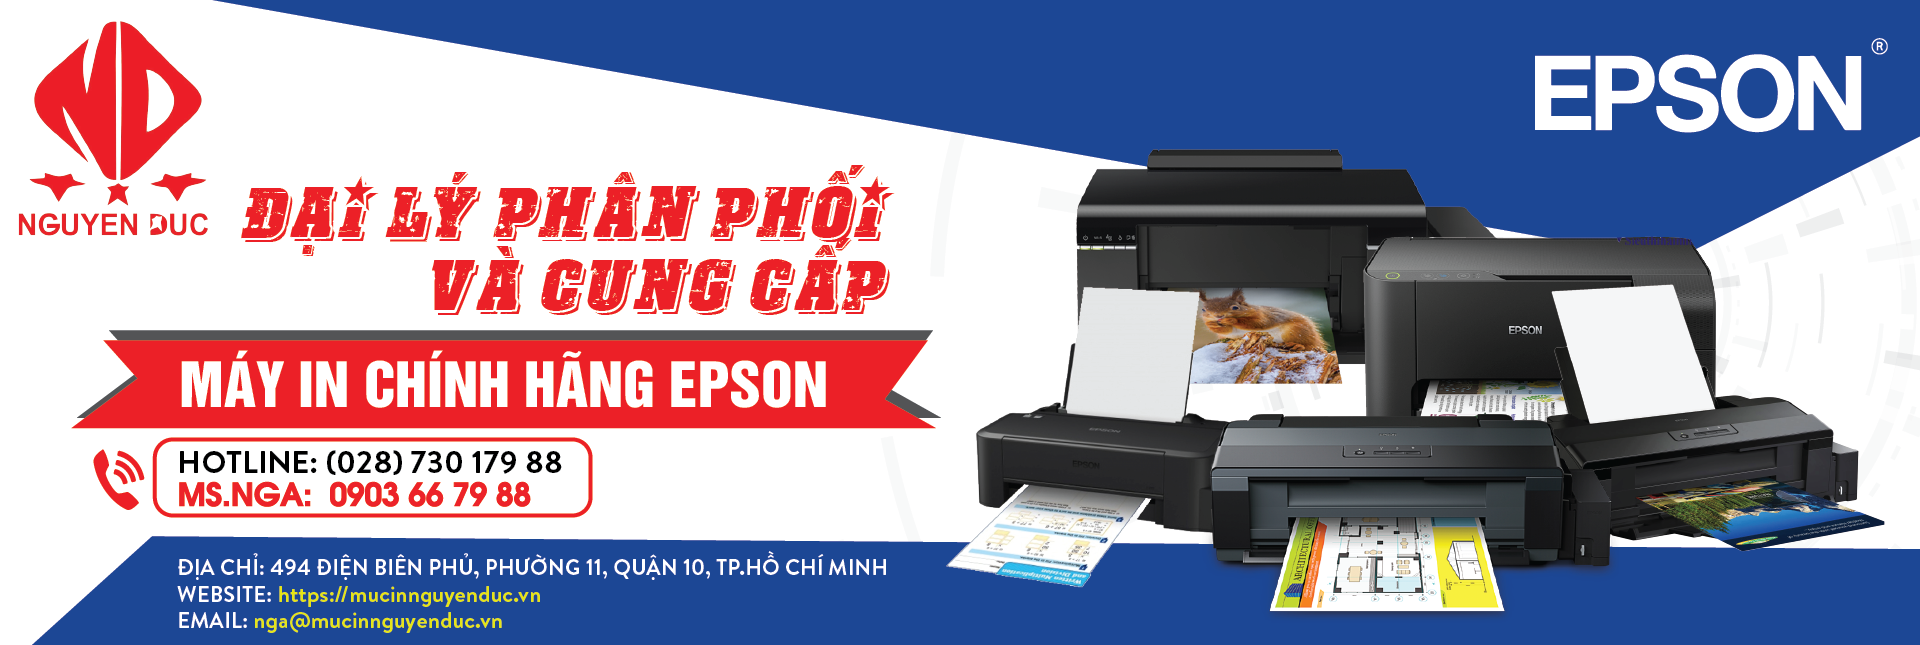 Đại lý phân phối chính hãng máy in kim Epson LQ-310. Giao hàng và lắp đặt tận nơi khu vực Quận 1, Thành phố Hồ Chí Minh